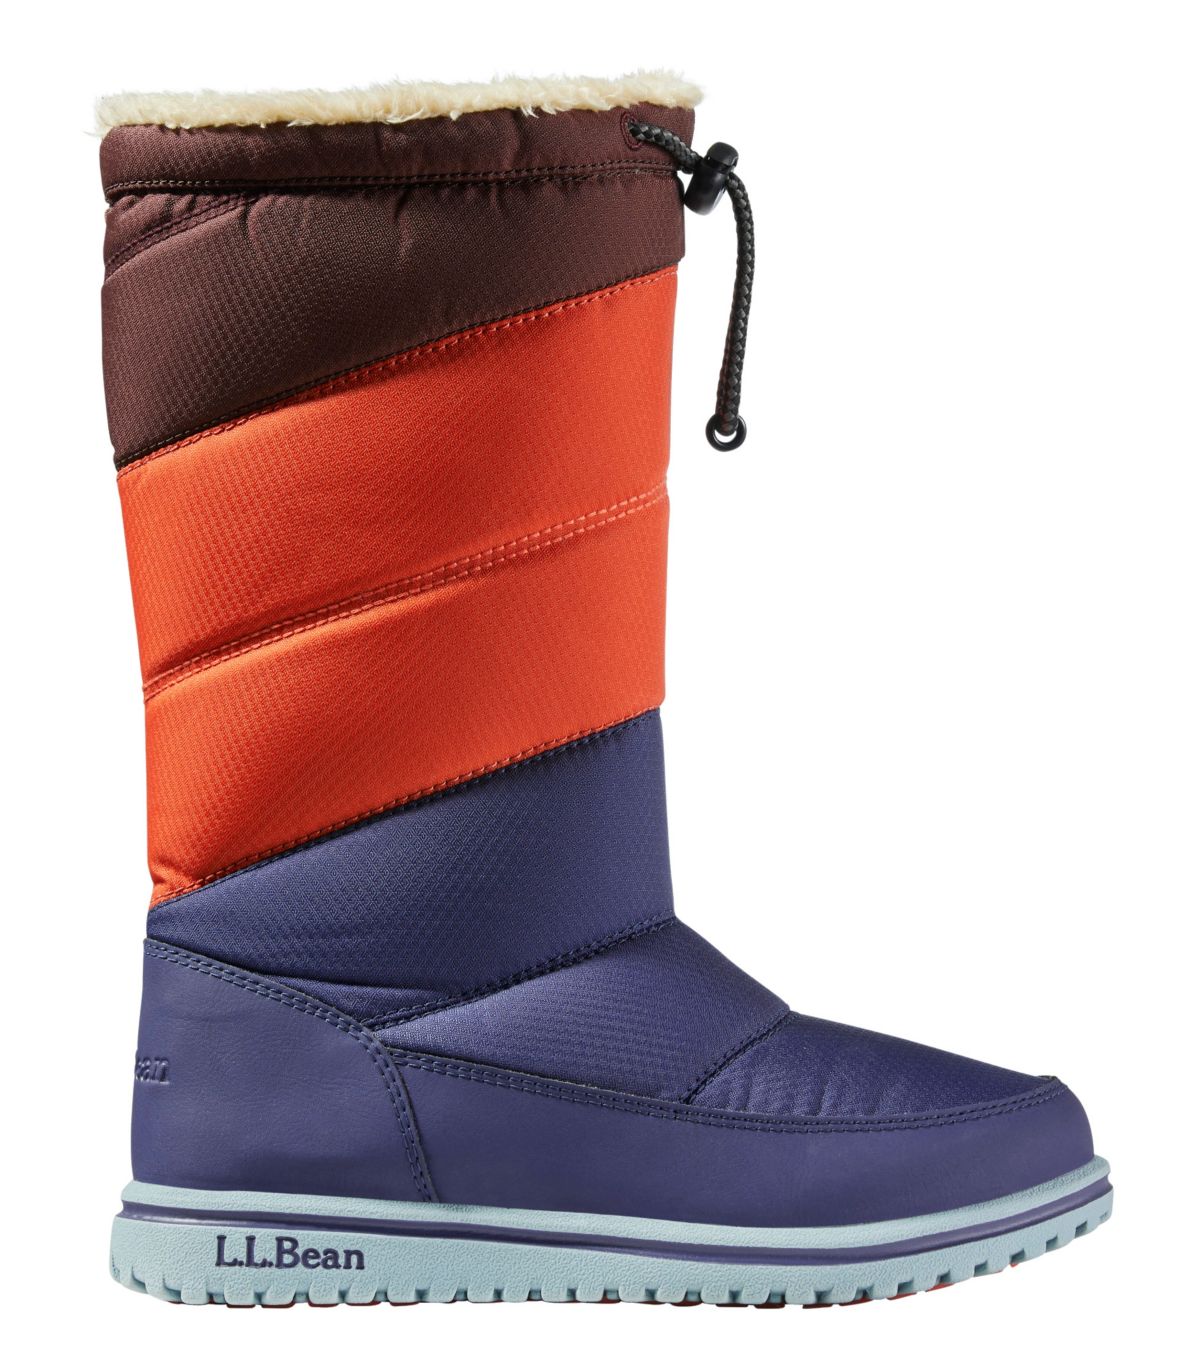 Kids' Ultralight Snow Boots, Tall